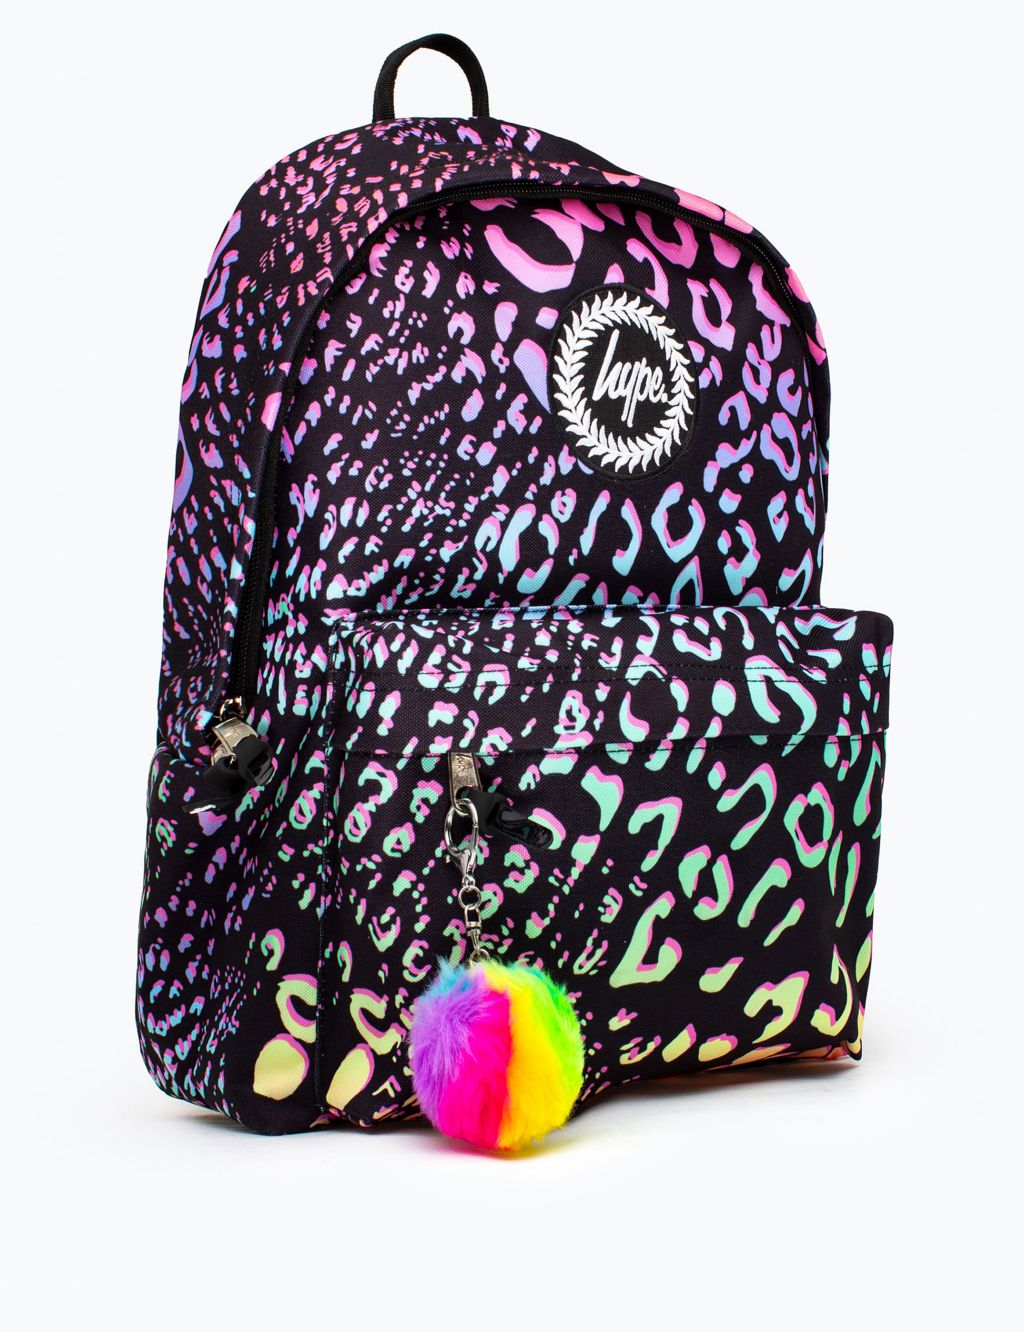 Kids’ Animal Print Backpack image 1